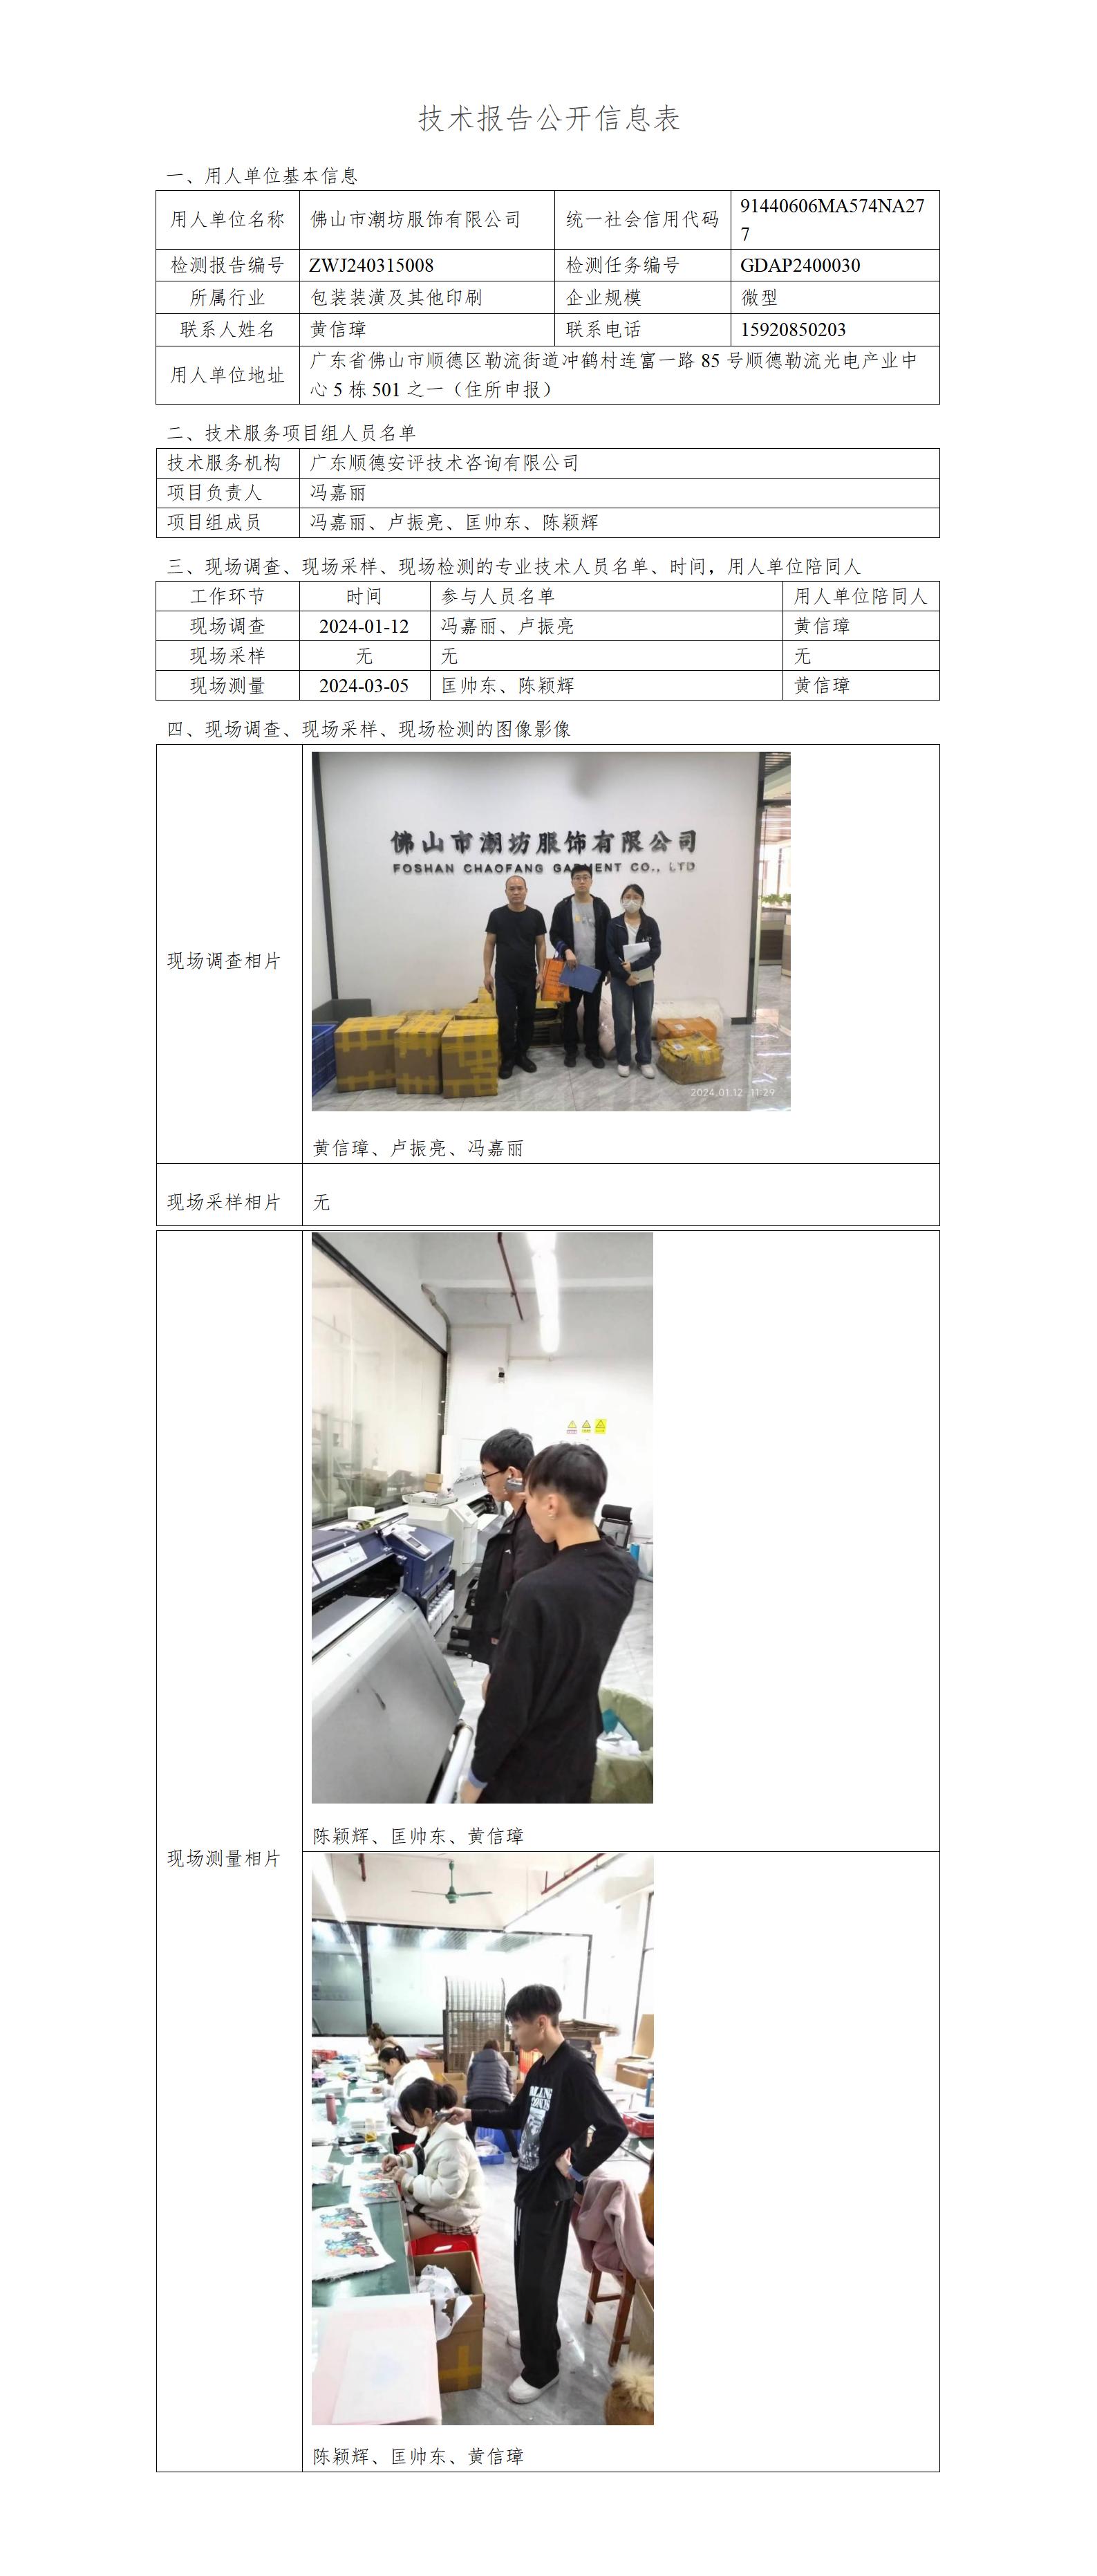 佛山市潮坊服饰有限公司-2014-技术报告公开信息表_01.jpg